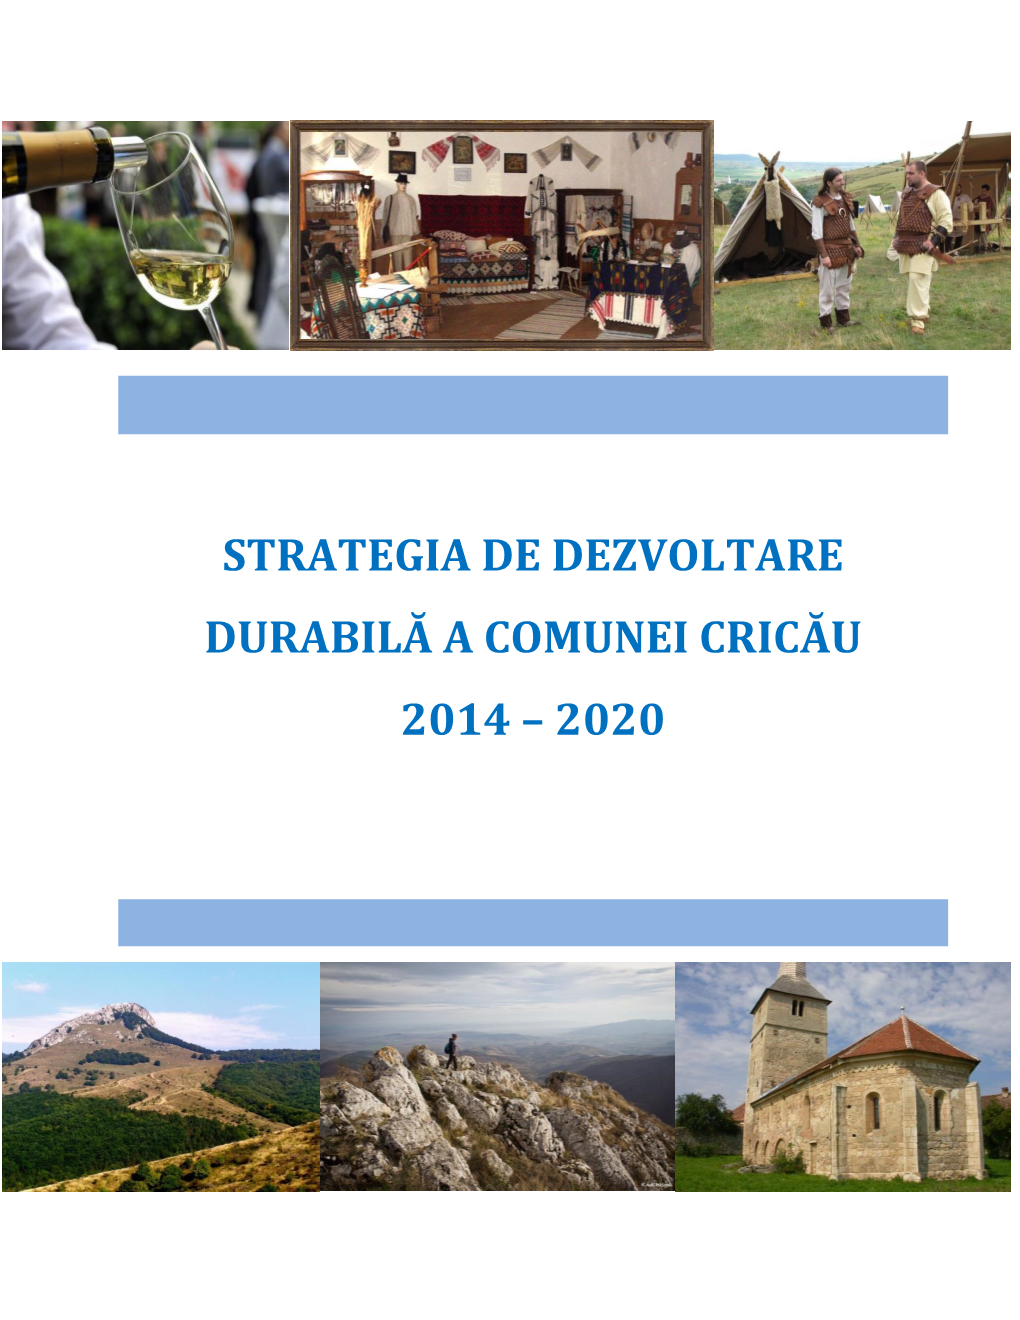 Strategia De Dezvoltare Durabilă a Comunei Cricău 2014 – 2020